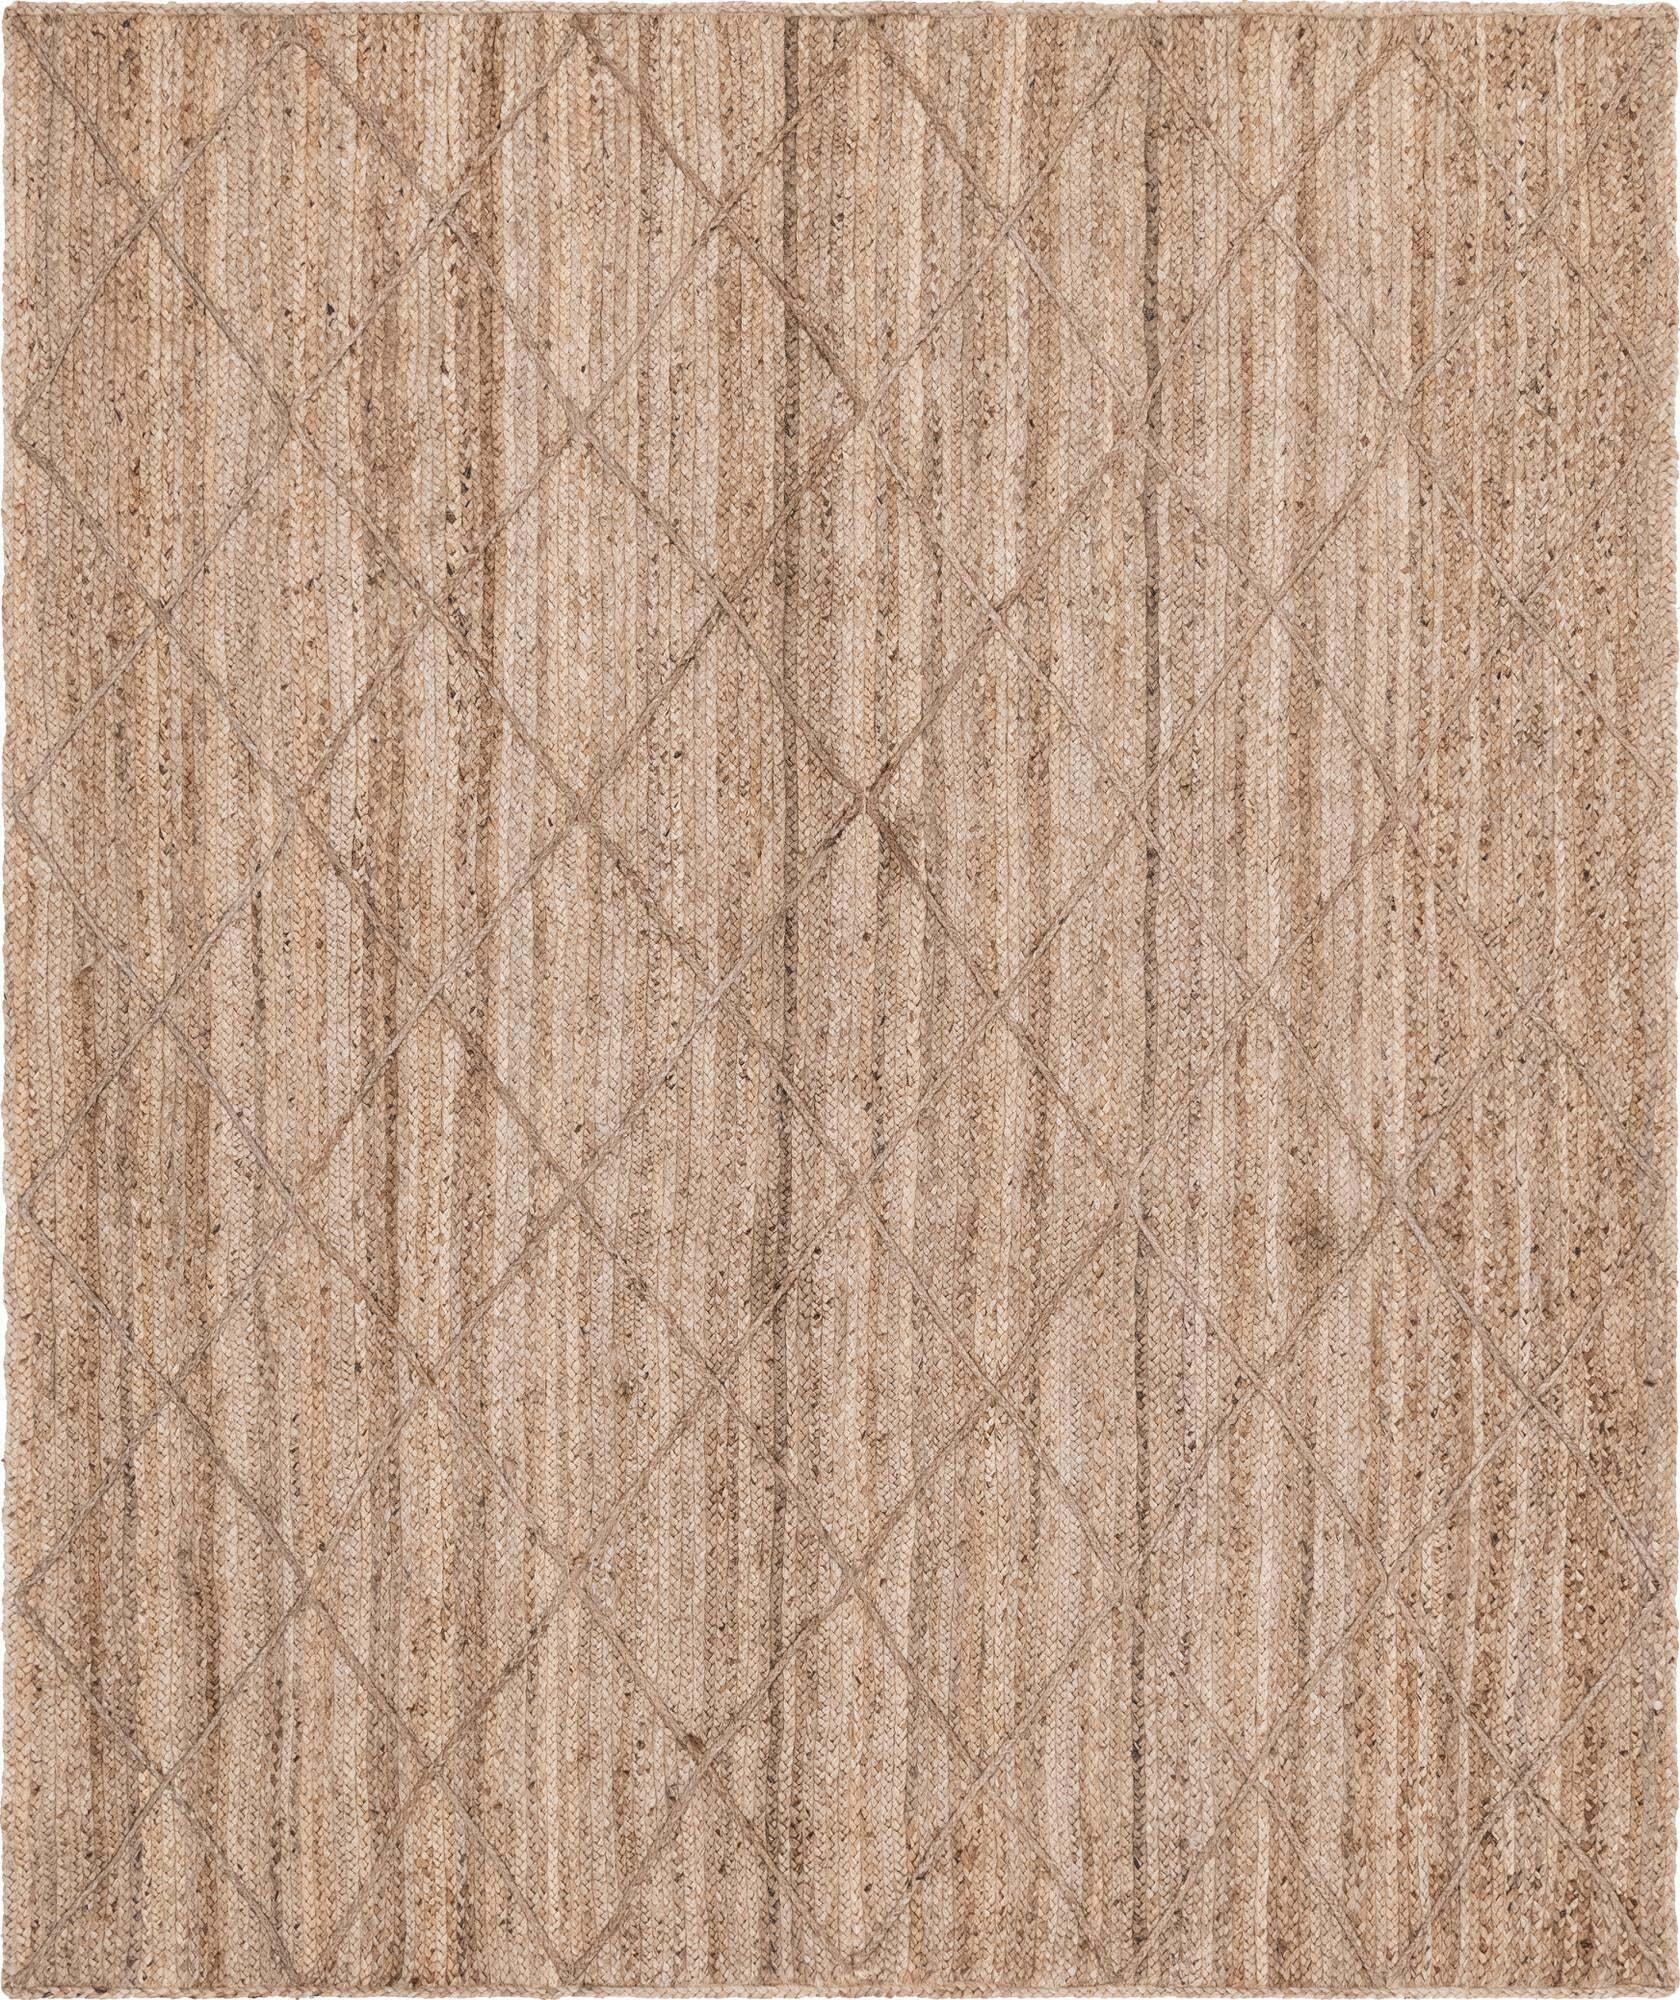 Unique Loom Indoor Rugs - Braided Jute Trellis Geometric Rectangular 8x11 Rug Natural